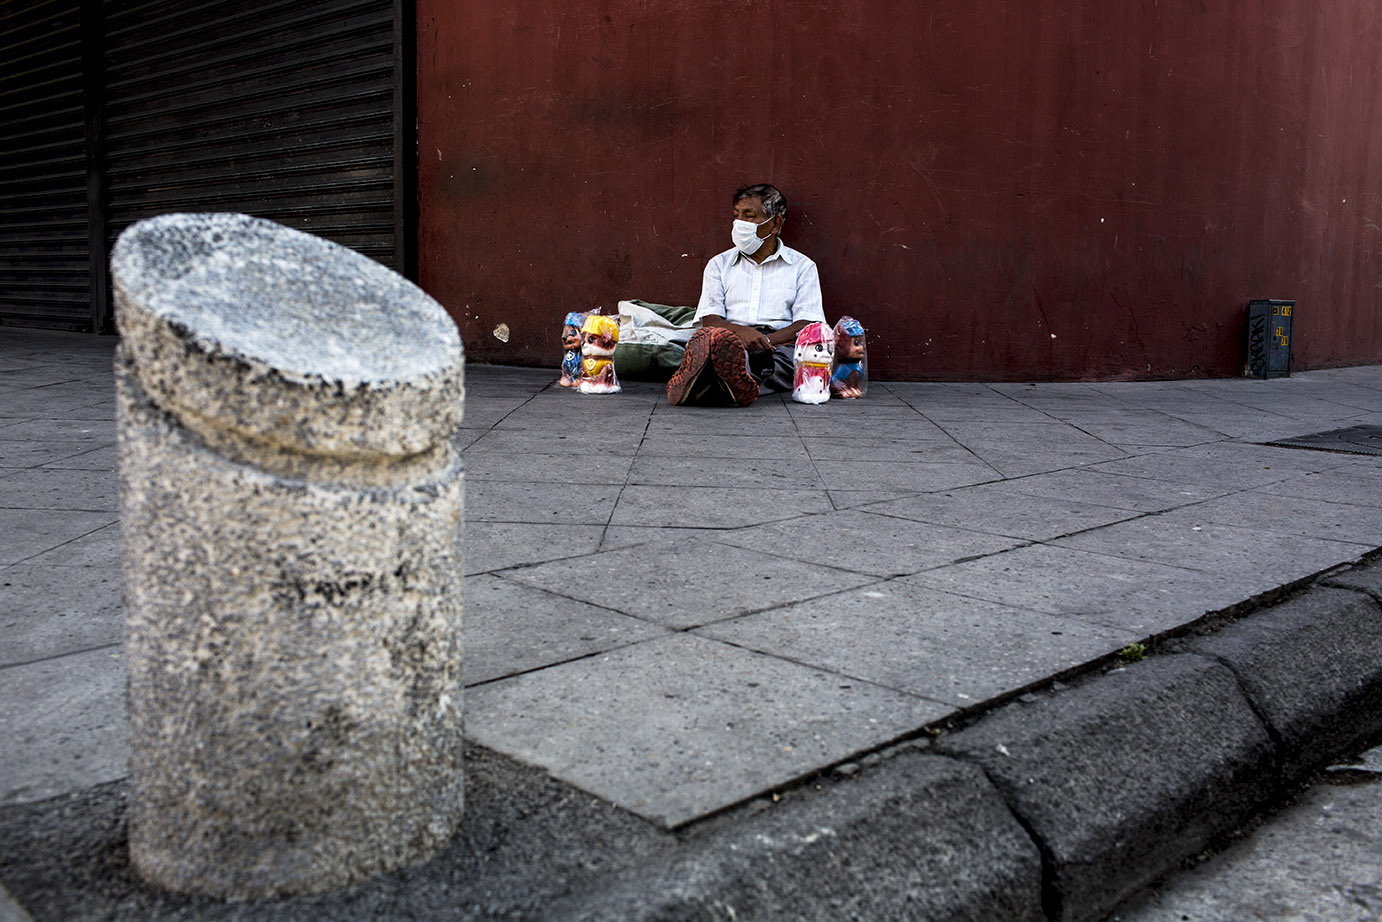 Don Pedro Ajanel, originario de Totonicapán, sienta al suelo rodeado de las alcancías que suele vender para alimentar a su familia a 20 quetzales cada una. El jueves 19 logró vender solamente una. Simone Dalmasso 